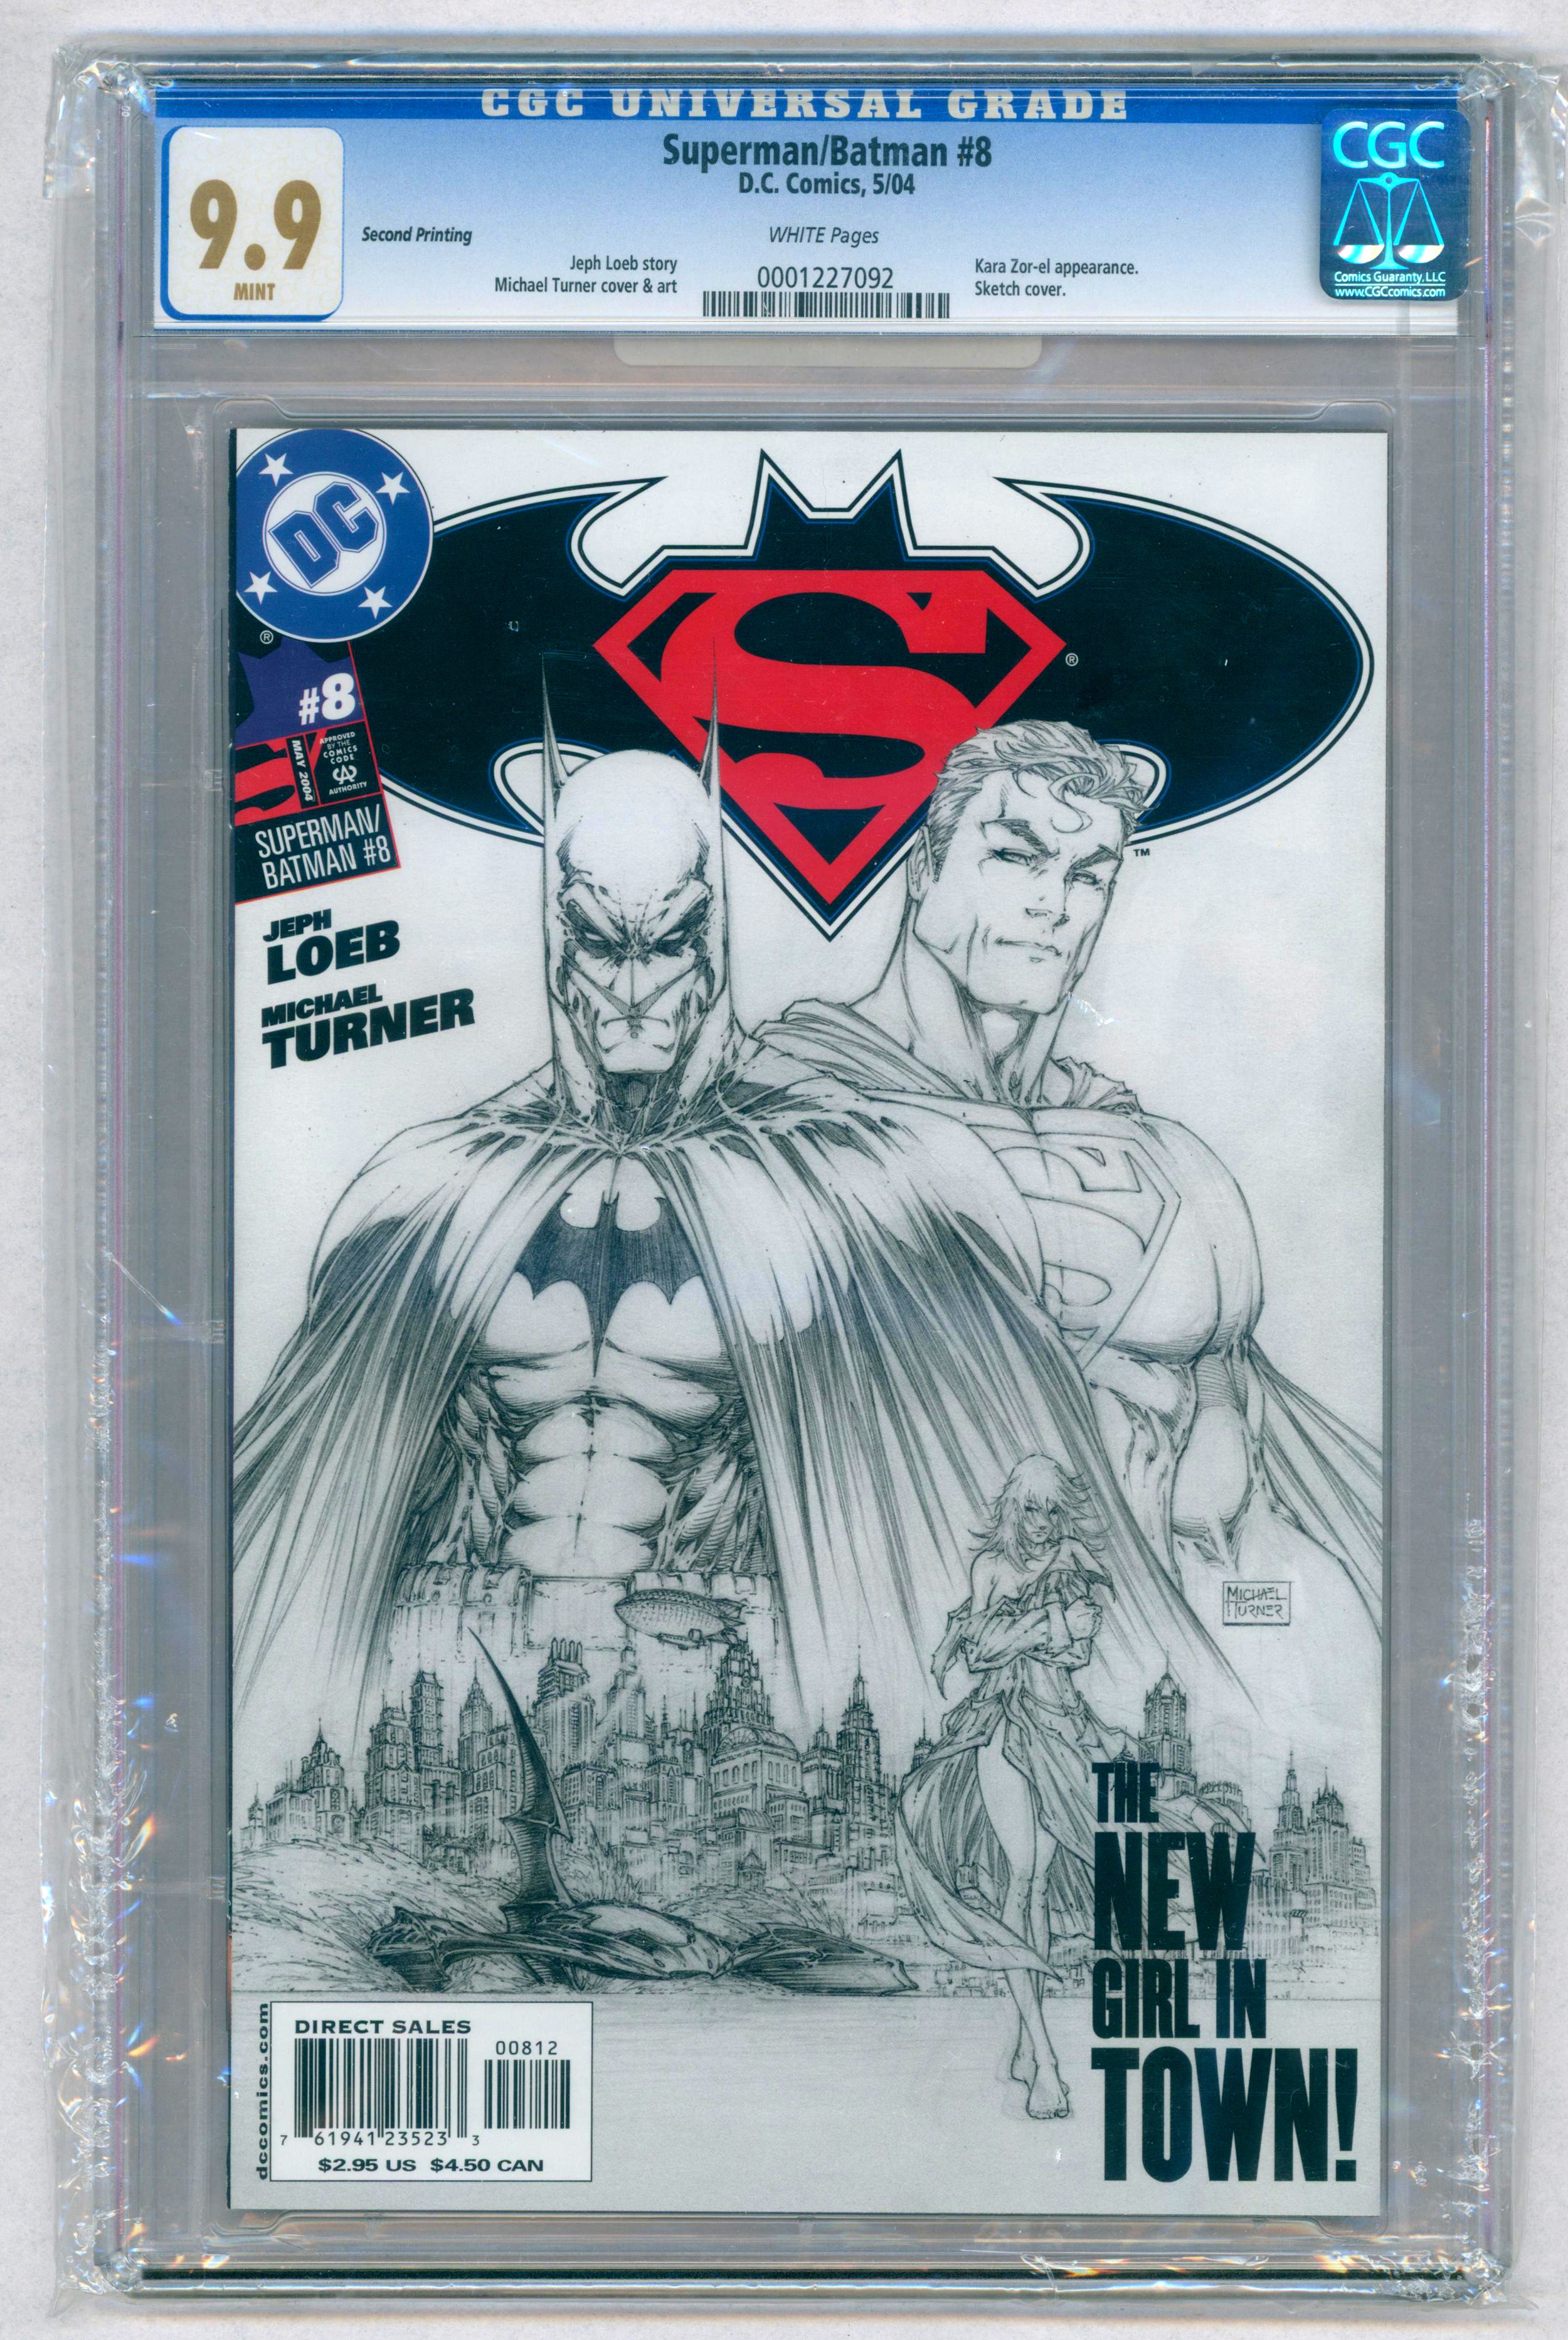 SUPERMAN/BATMAN #8 – (May 2004 DC Comics) – GRADED 9.9 Mint by CGC – Kara Zor-el appearance.